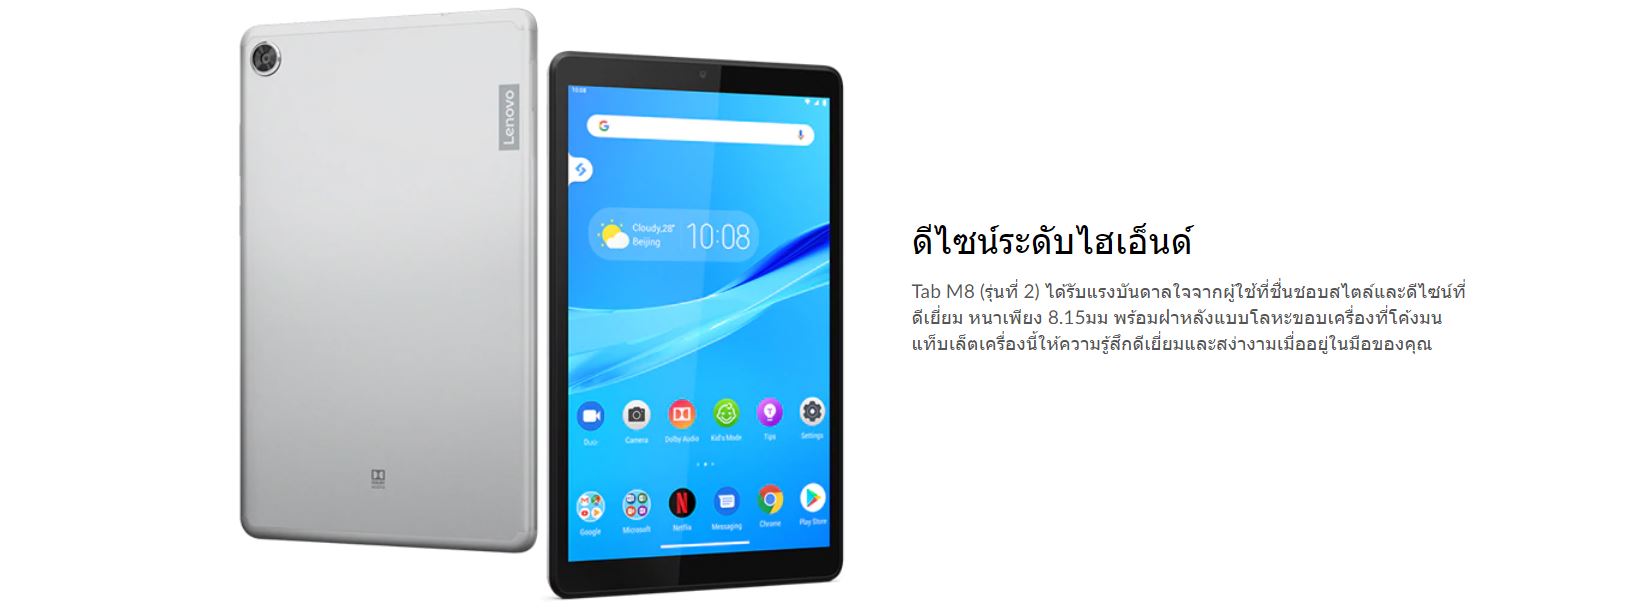 เกี่ยวกับ แท็บเล็ต LENOVO TAB M8 TB-8505X (2rd Gen) 8" 4G LTE โทรออกได้ (3+32GB) ศูนย์ไทย 1 ปี